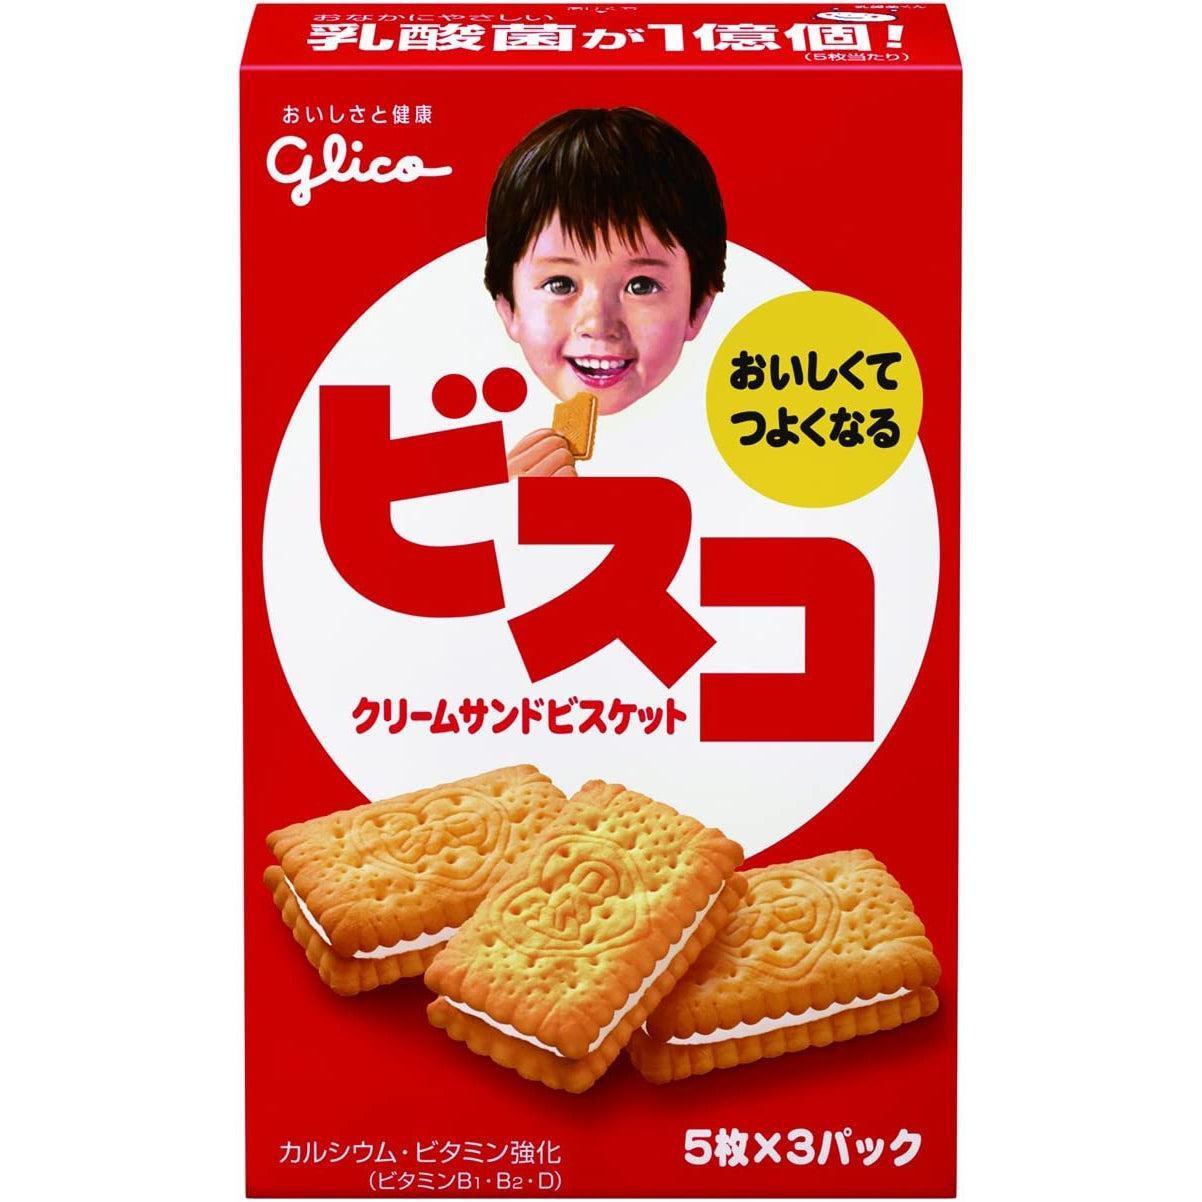 Glico Bisco Hokkaido Milk Cream Sandwich Biscuits 15 Pieces (Pack of 5)